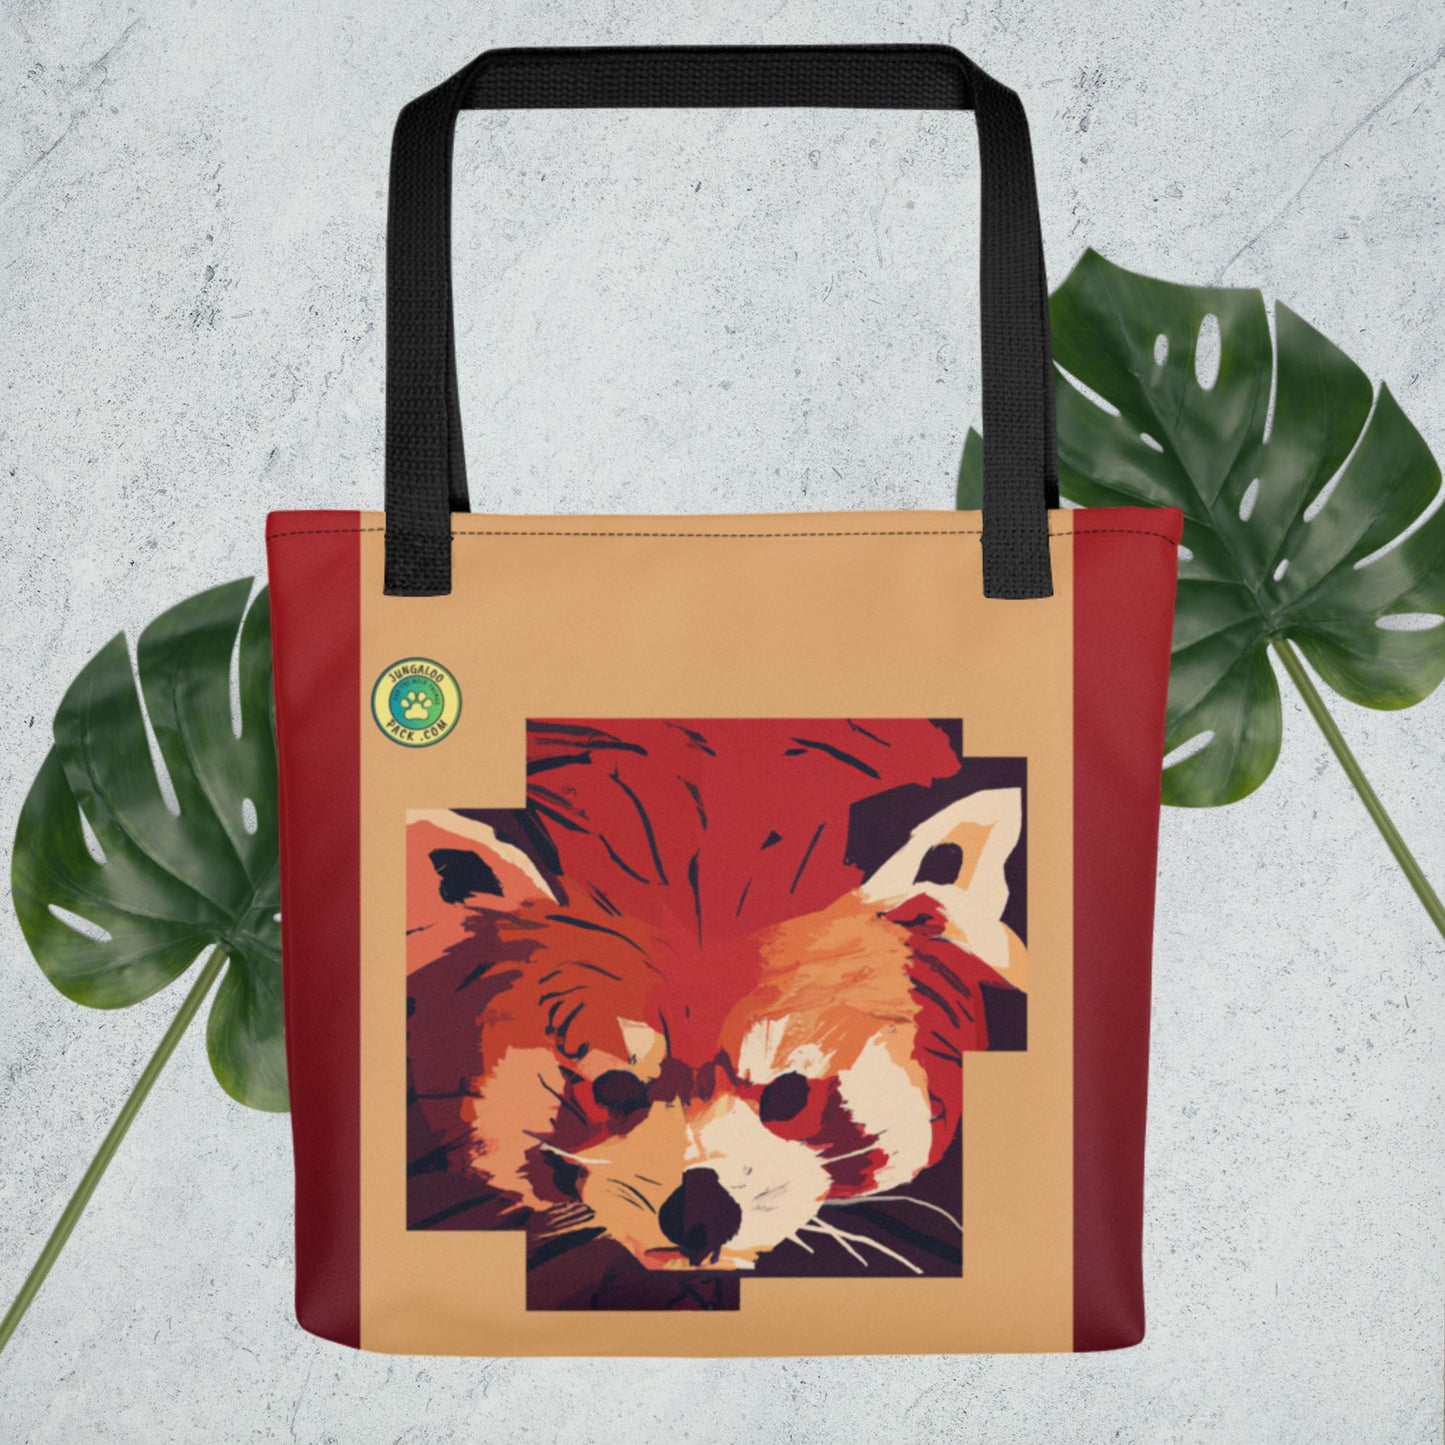 Red Panda Book Bag - Jungaloo